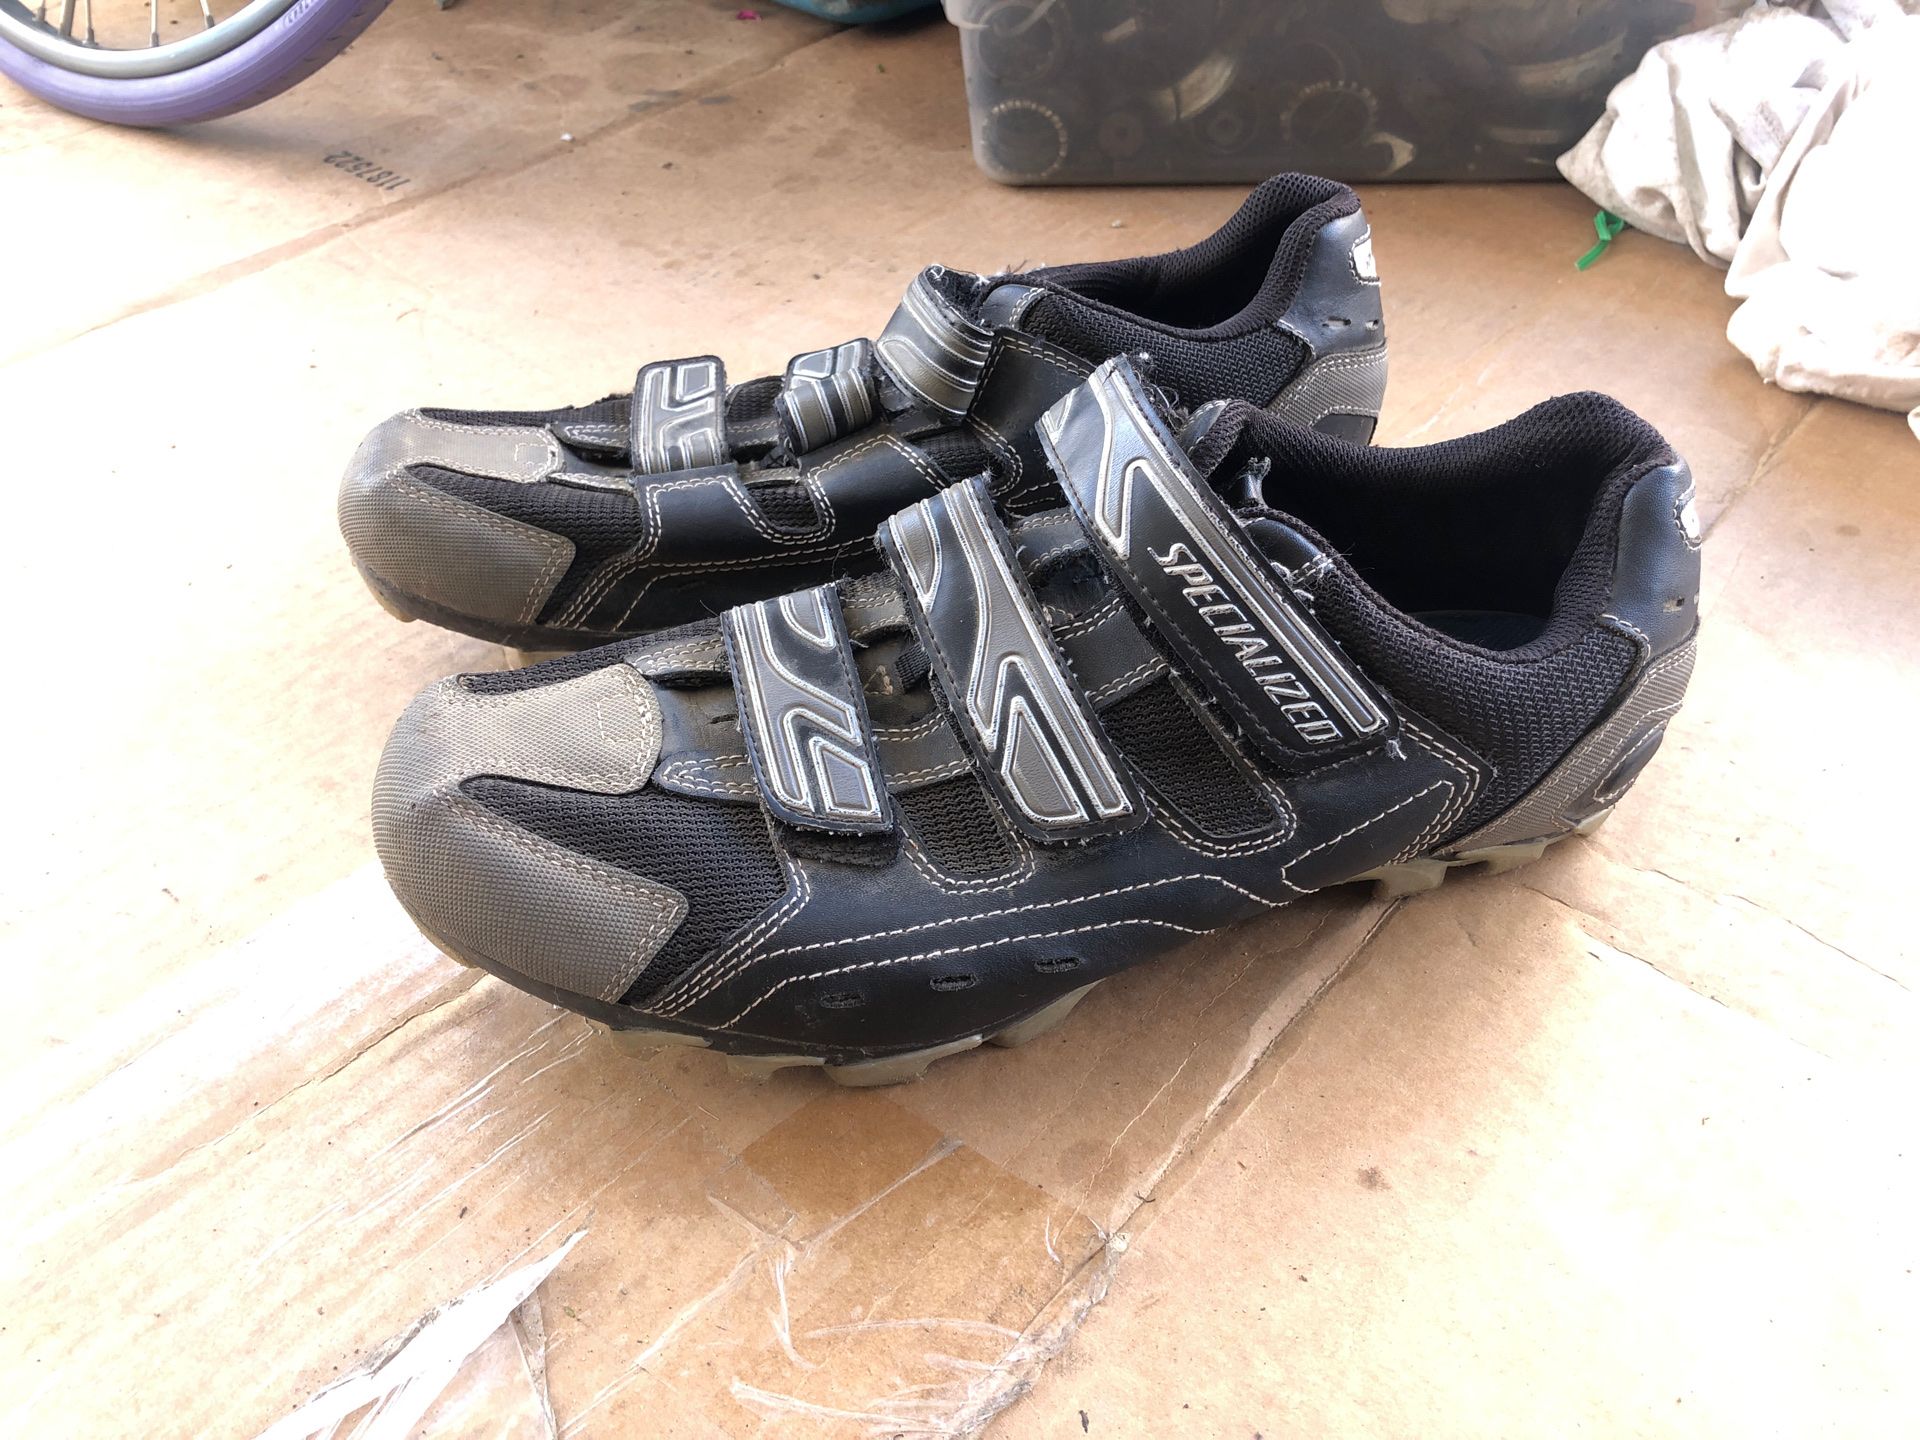 Shimano mountain bike shoes size 45 (10.5 us)